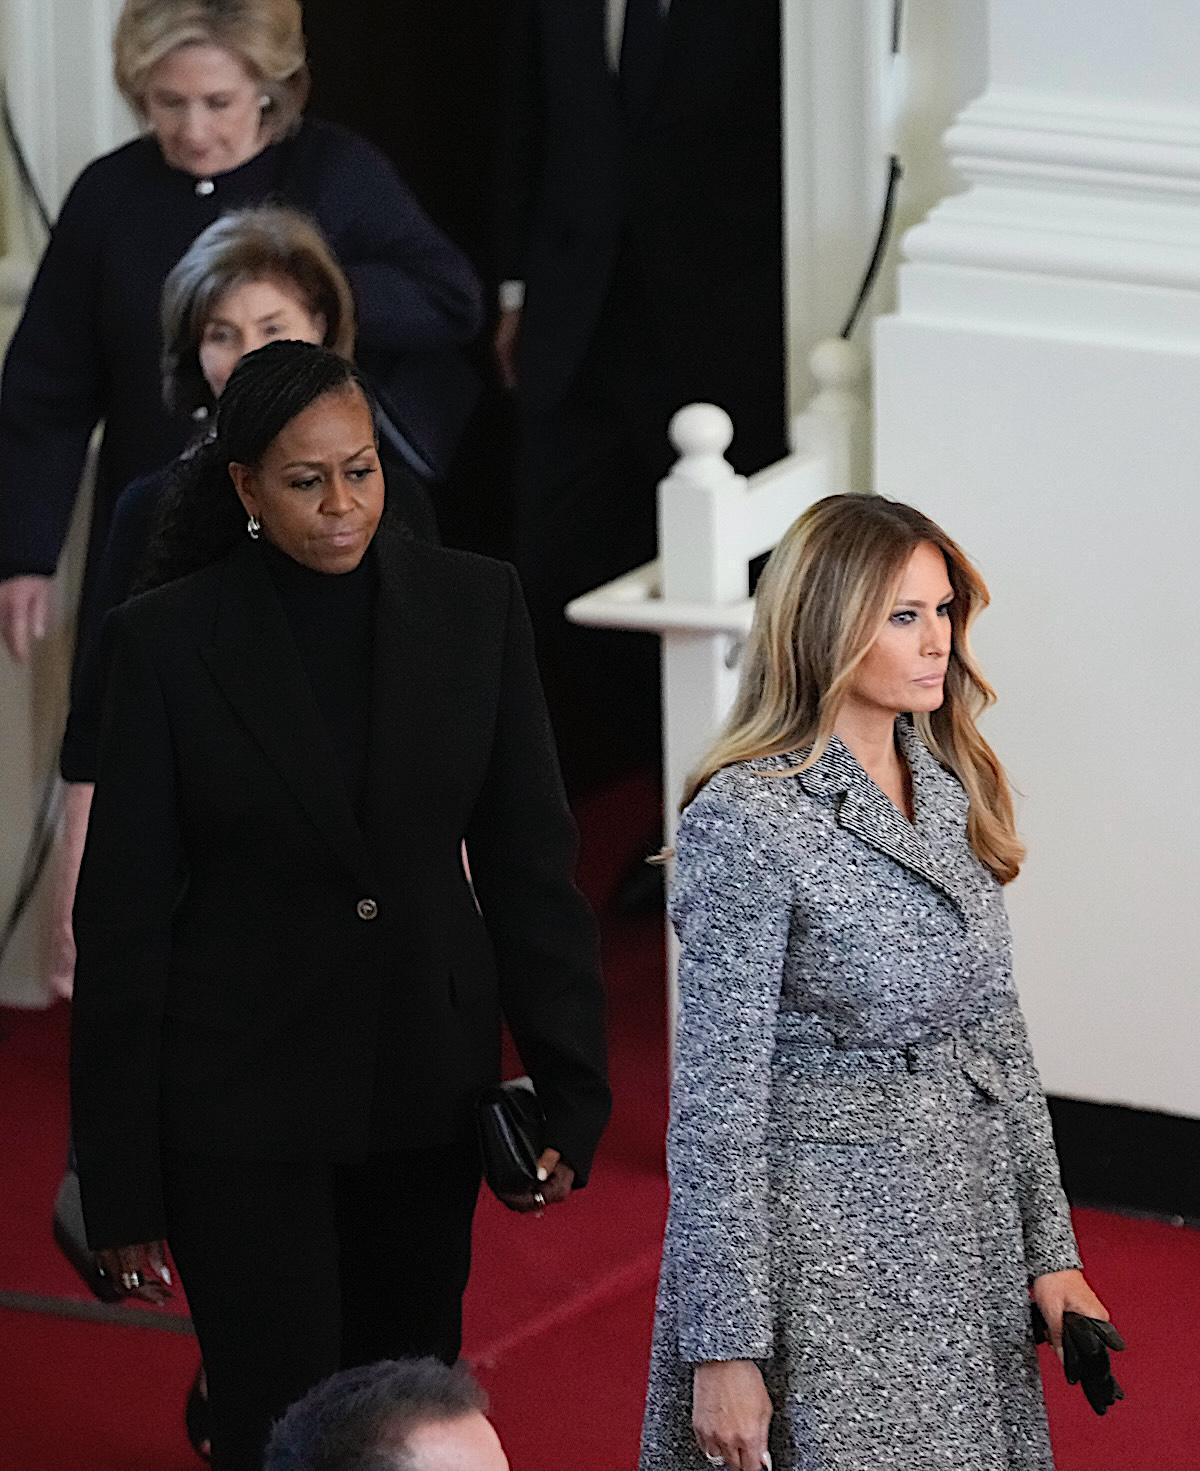 지미 카터 전 대통령의 부인 로잘린 카터 여사 장례식에 참석한 전·현직 퍼스트레이디들. 멜라니아 트럼프 여사는 다른 퍼스트레이디들과 달리 회색 코트를 입었다. 백악관 홈페이지